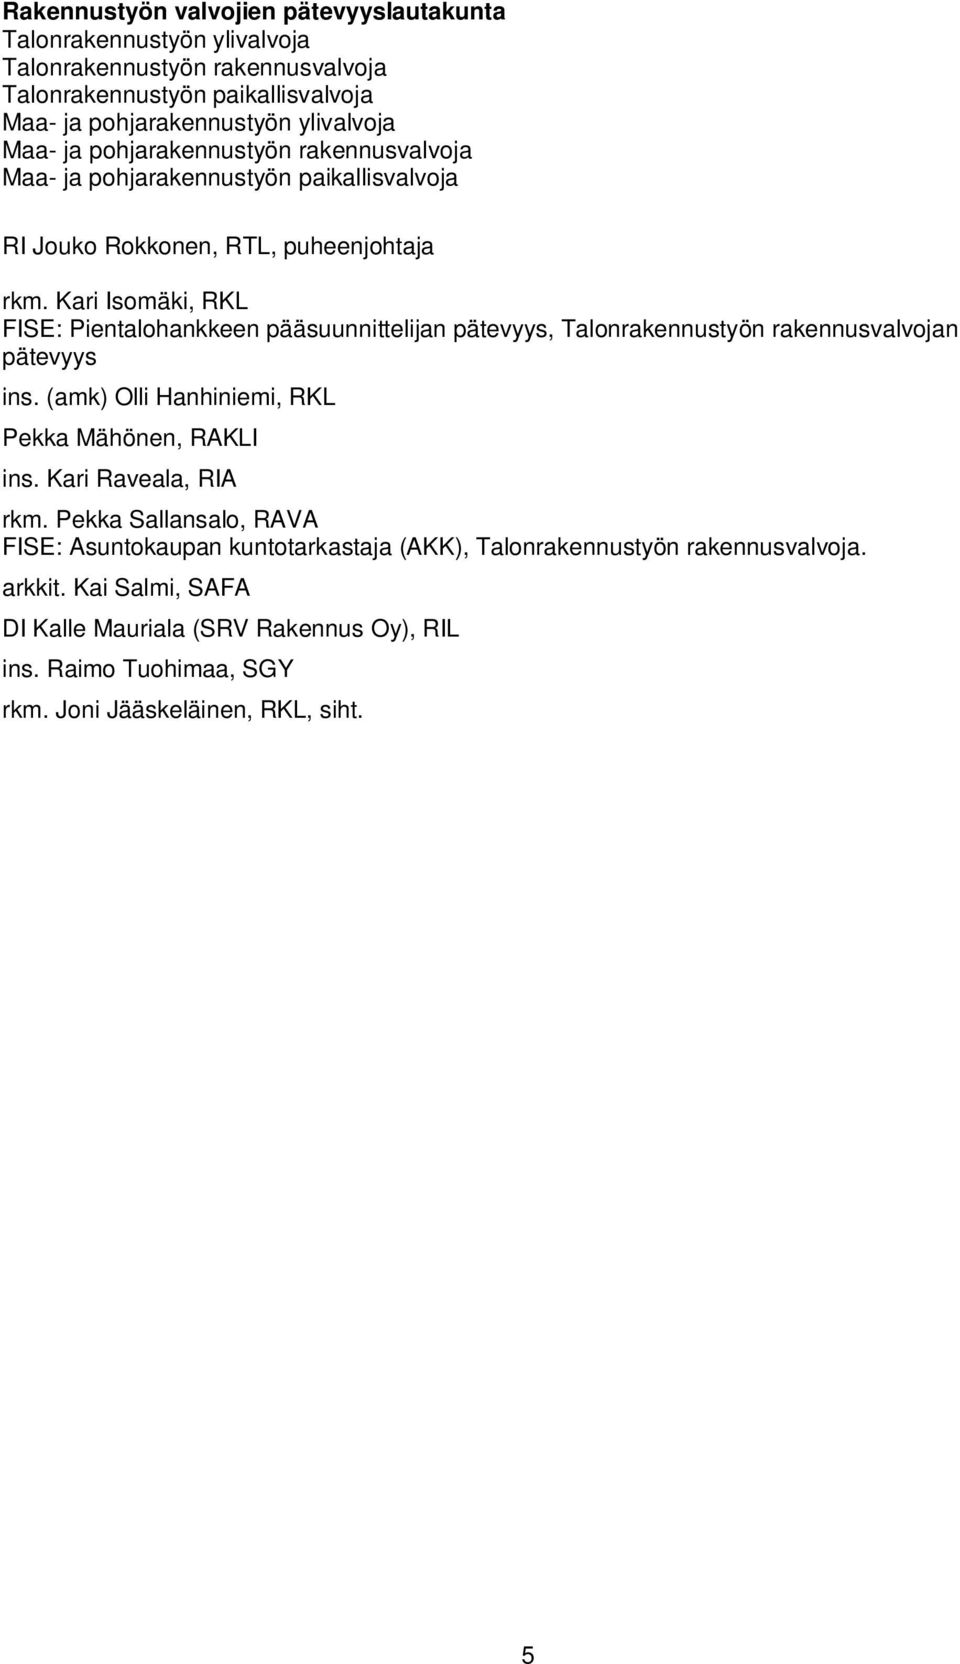 Kari Isomäki, RKL FISE: Pientalohankkeen pääsuunnittelijan pätevyys, Talonrakennustyön rakennusvalvojan pätevyys ins. (amk) Olli Hanhiniemi, RKL Pekka Mähönen, RAKLI ins.